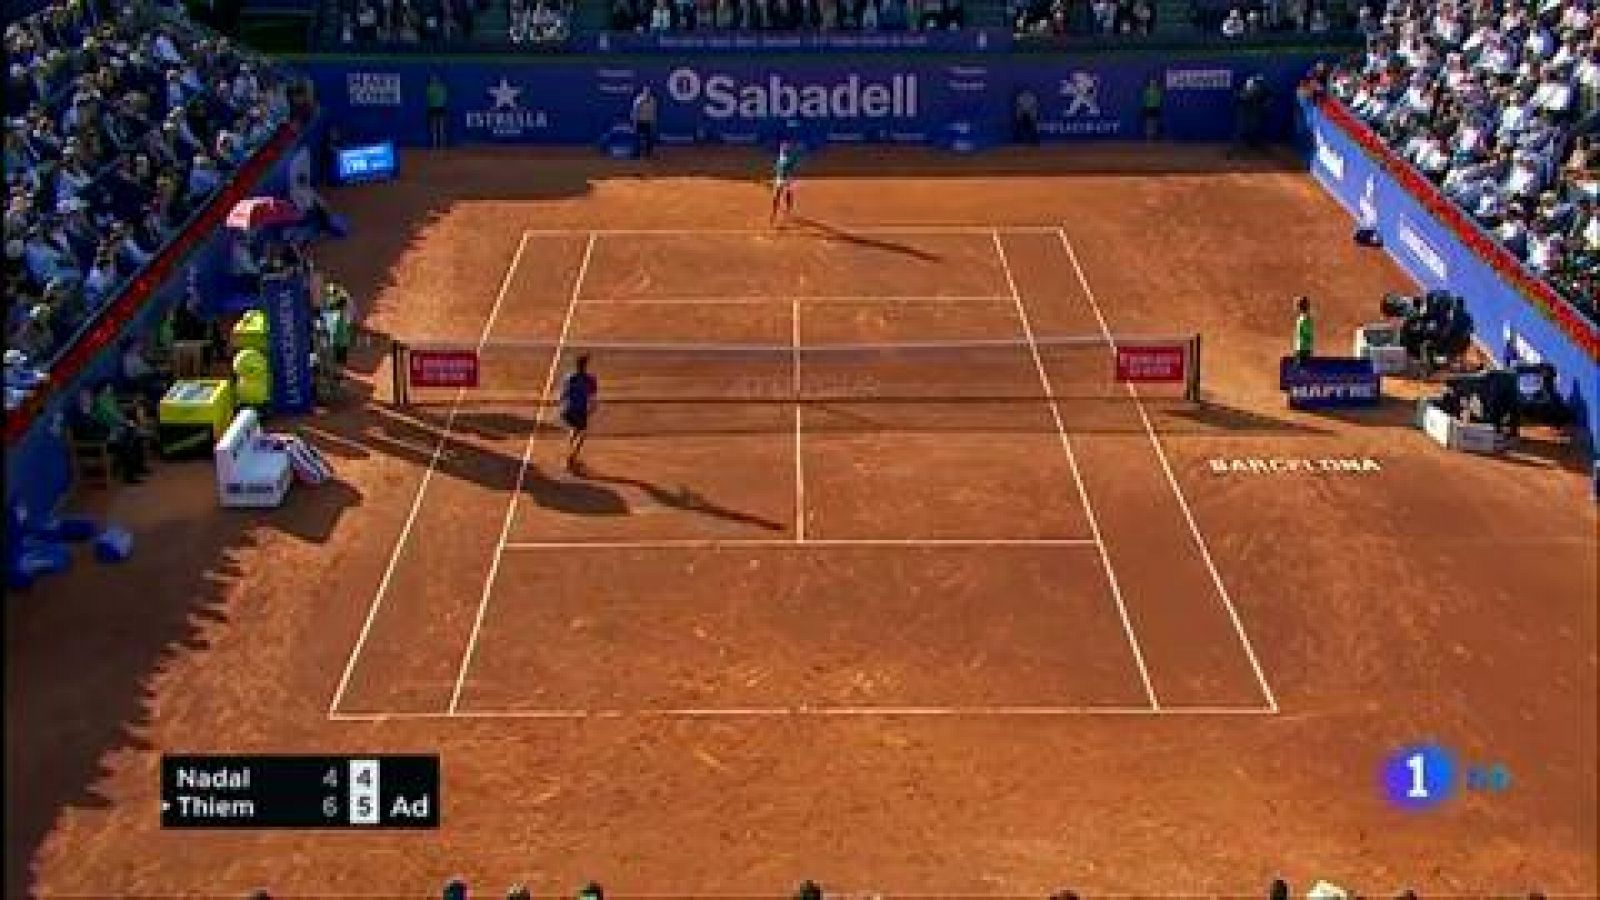 El tenista español Rafa Nadal ha sido eliminado en semifinales del Conde de Godó al perder por un doble 6-4 con Dominic Thiem. 